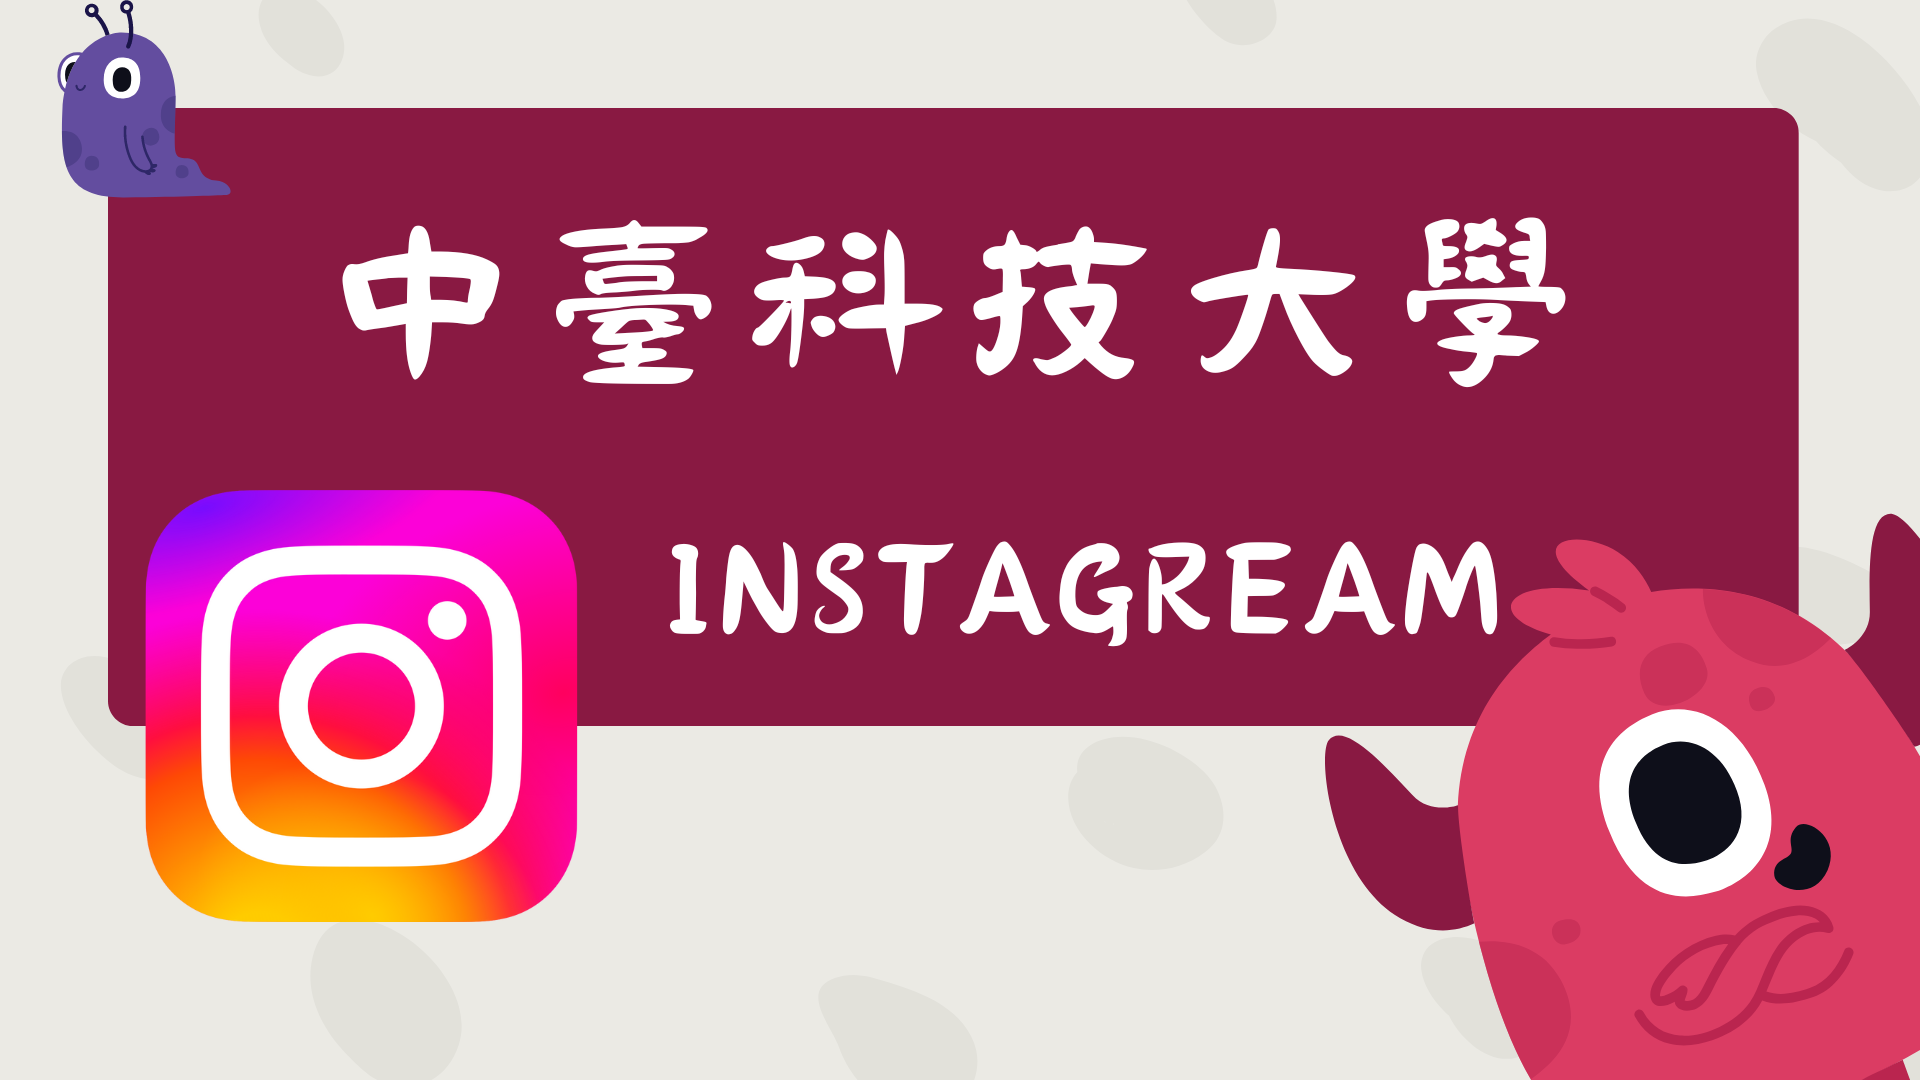 中臺科技大學 Instagram(另開新視窗)